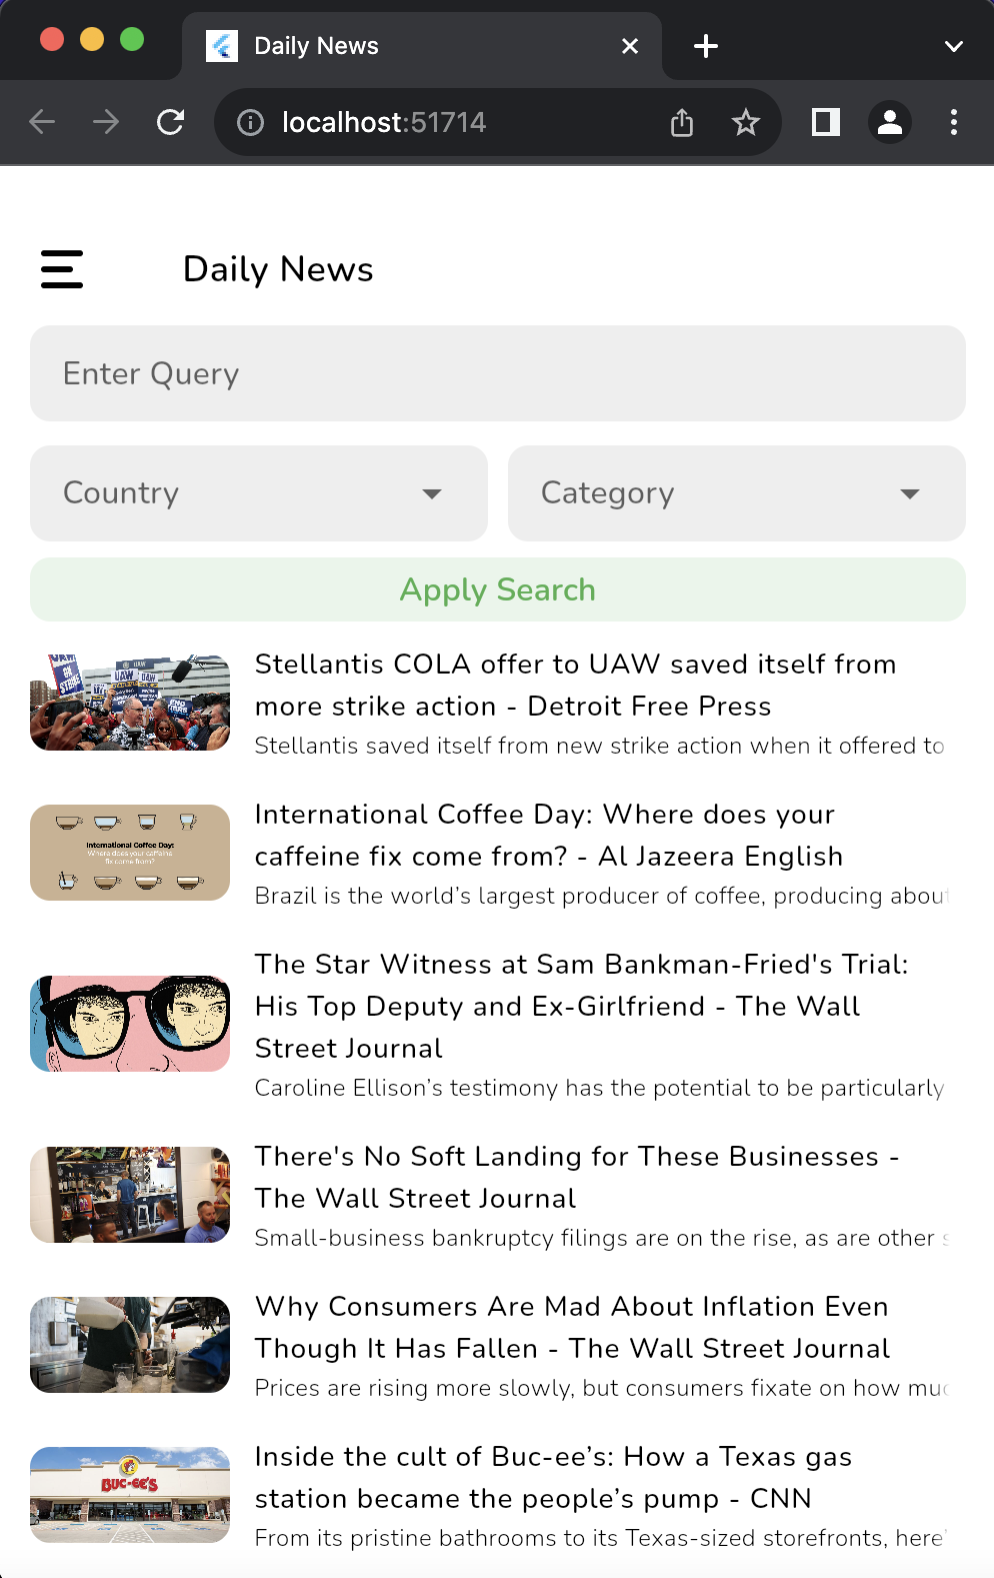 A Flutter app showcasing daily news articles